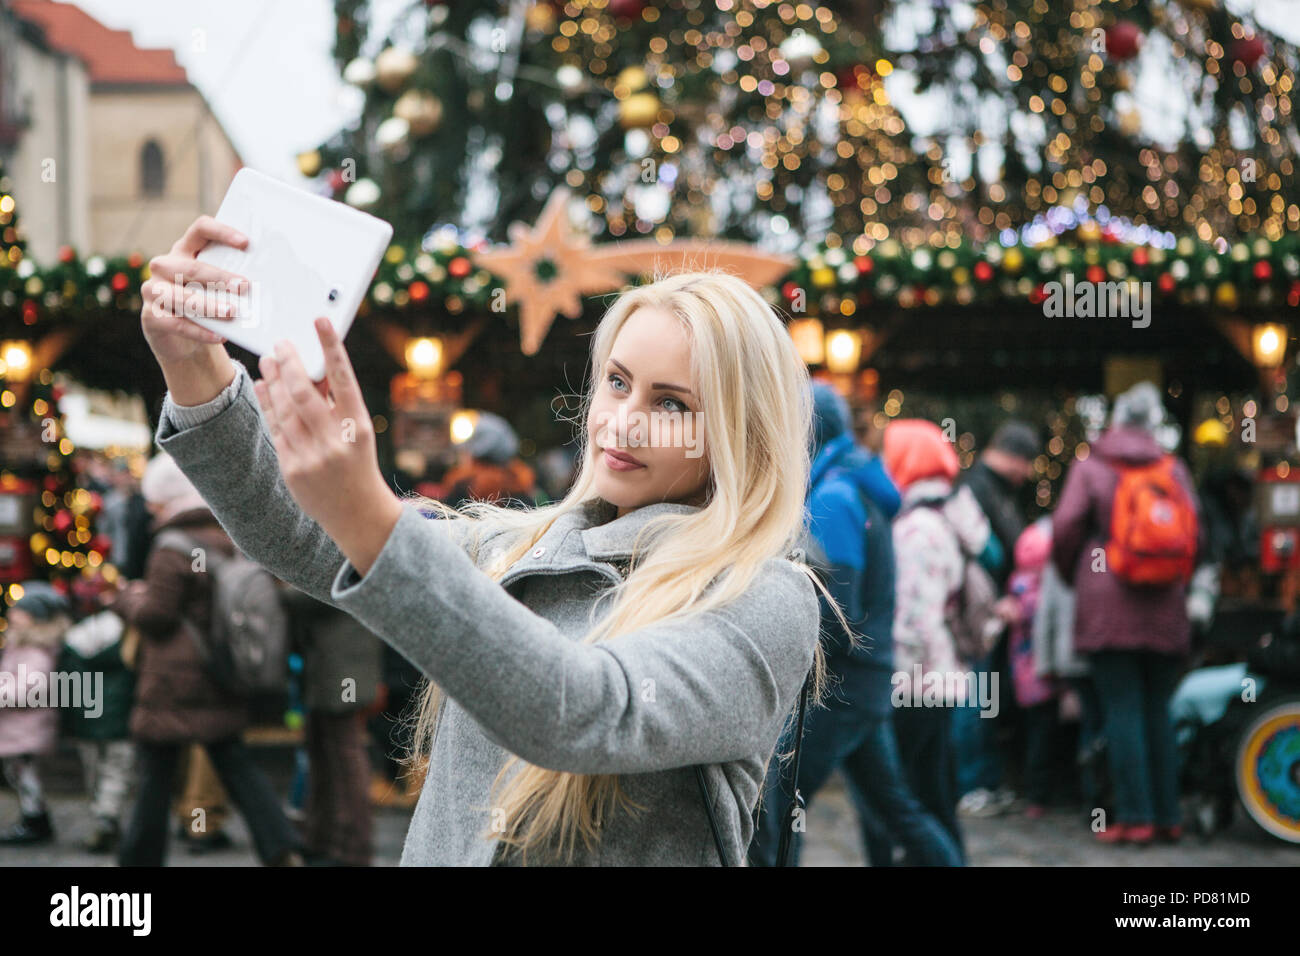 Eine wunderschöne blonde junge Frau oder ein Mädchen tun selfie oder Fotografieren neben einem Weihnachtsbaum während der Weihnachtsfeiertage am Altstädter Ring in Prag, Tschechische Republik. Stockfoto